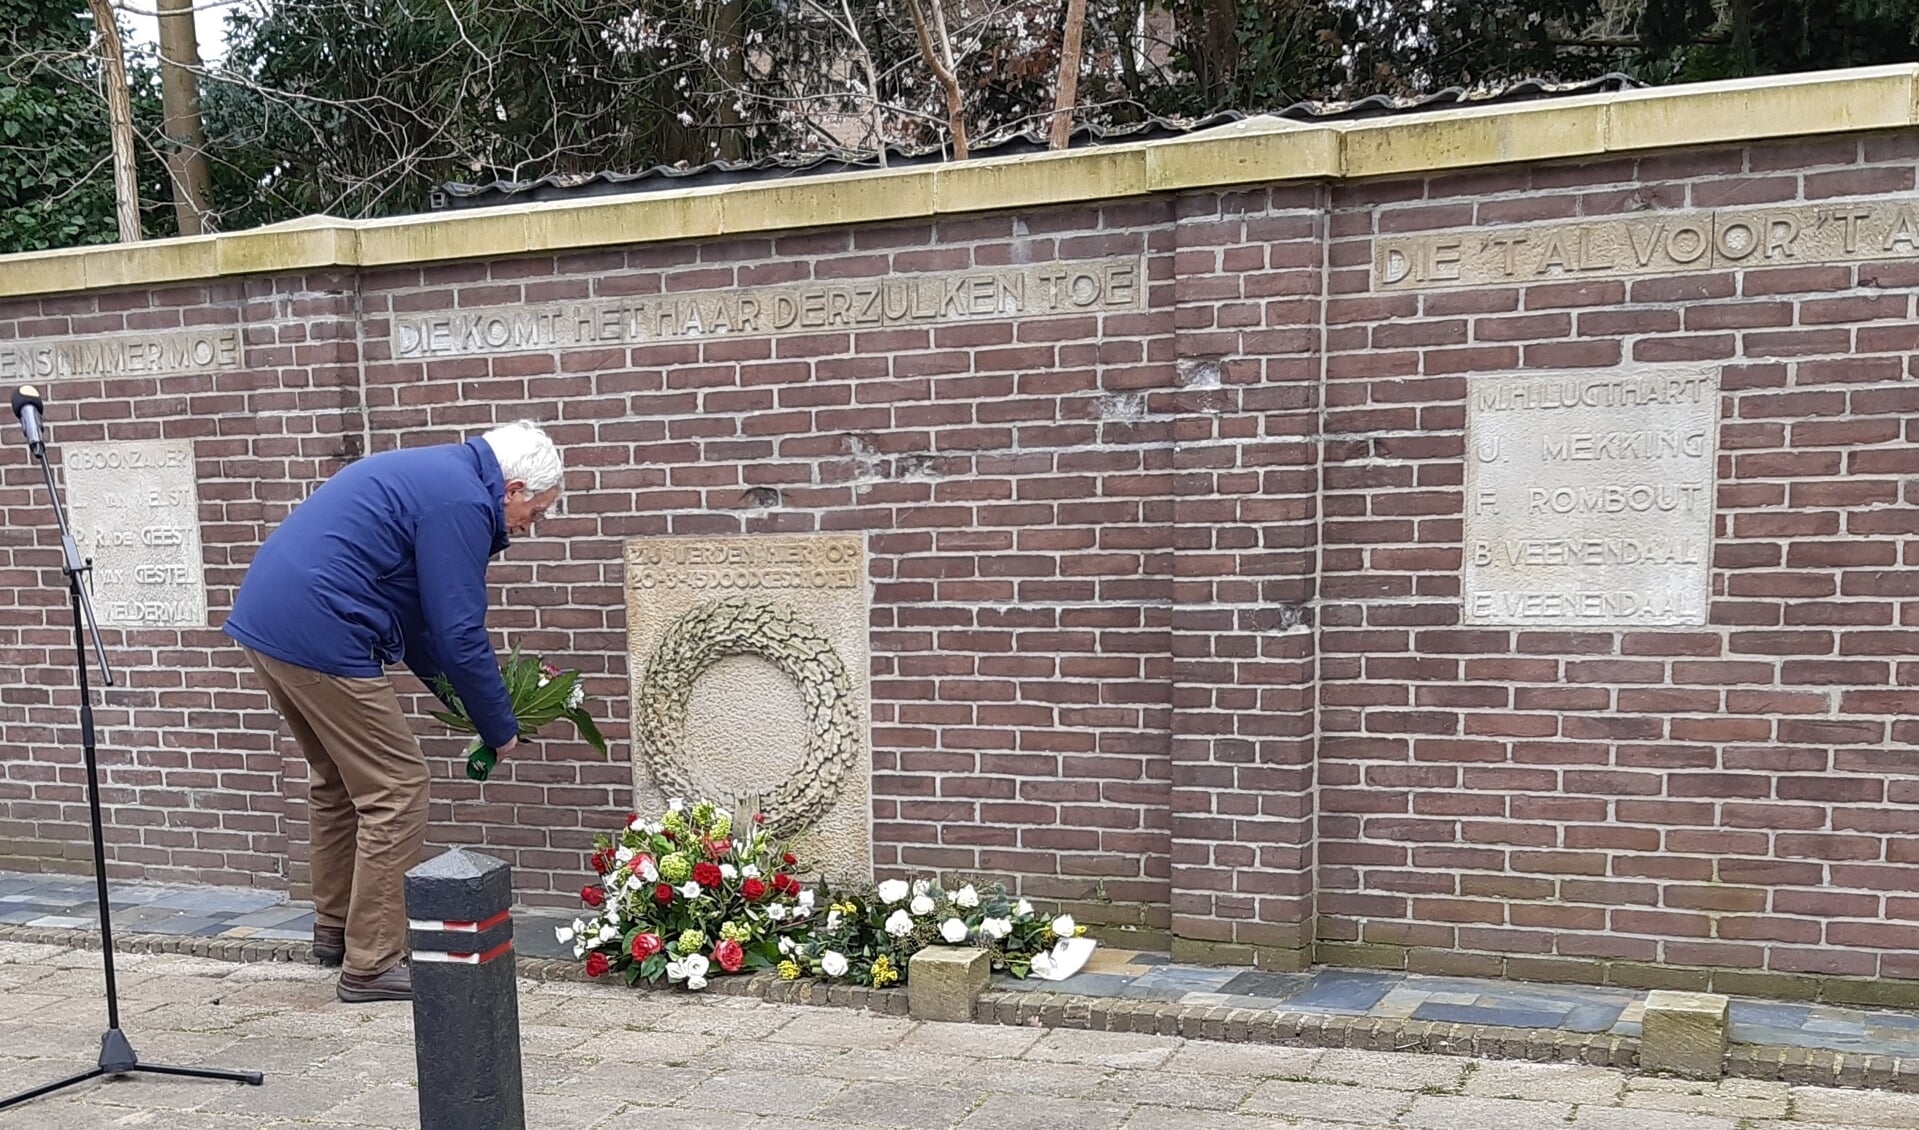  Simon van de Pol, v.z. Ver.Oud Ede legt een krans bij het verzetsmonument aan de Appelweg in Amersfoort.